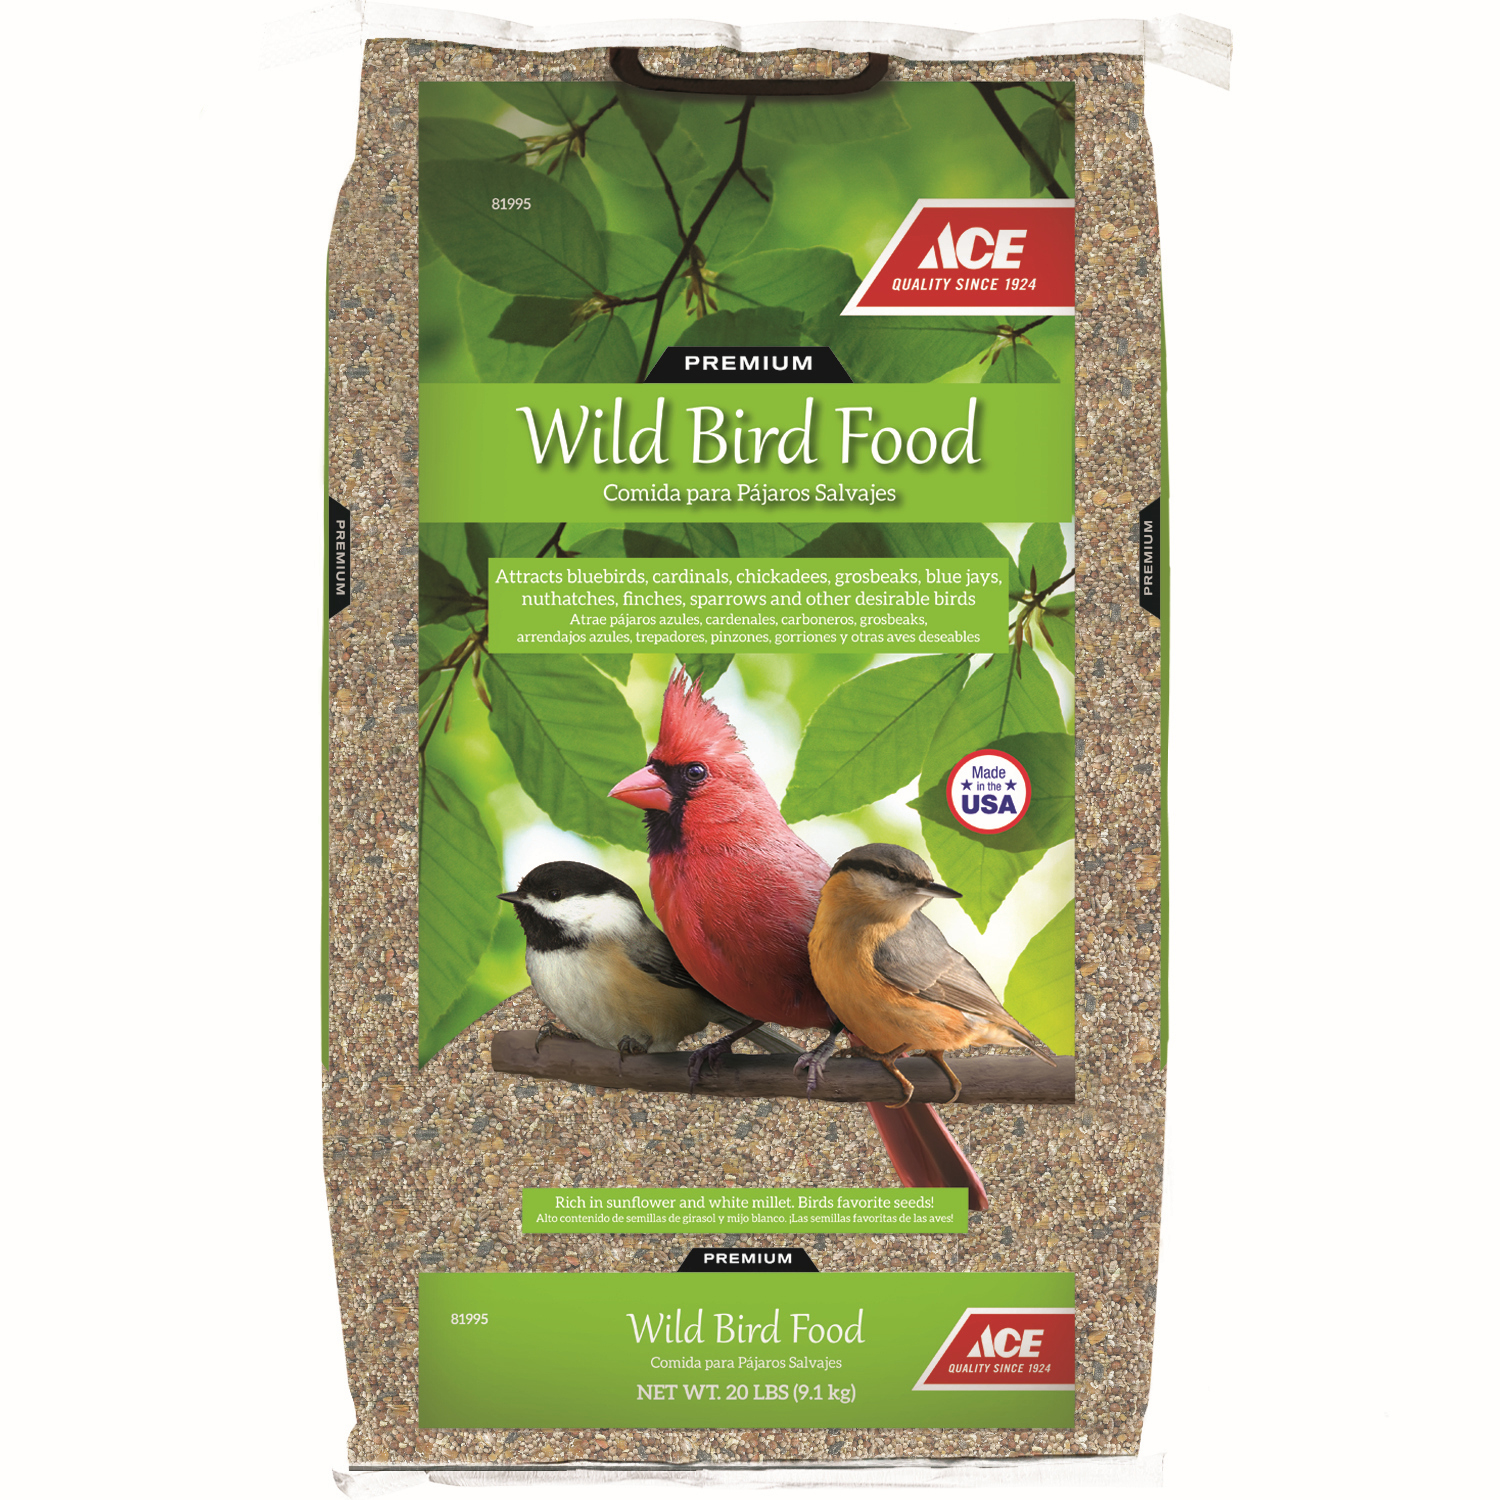 20LB WILD BIRD FOOD - Cofer's Home & Garden